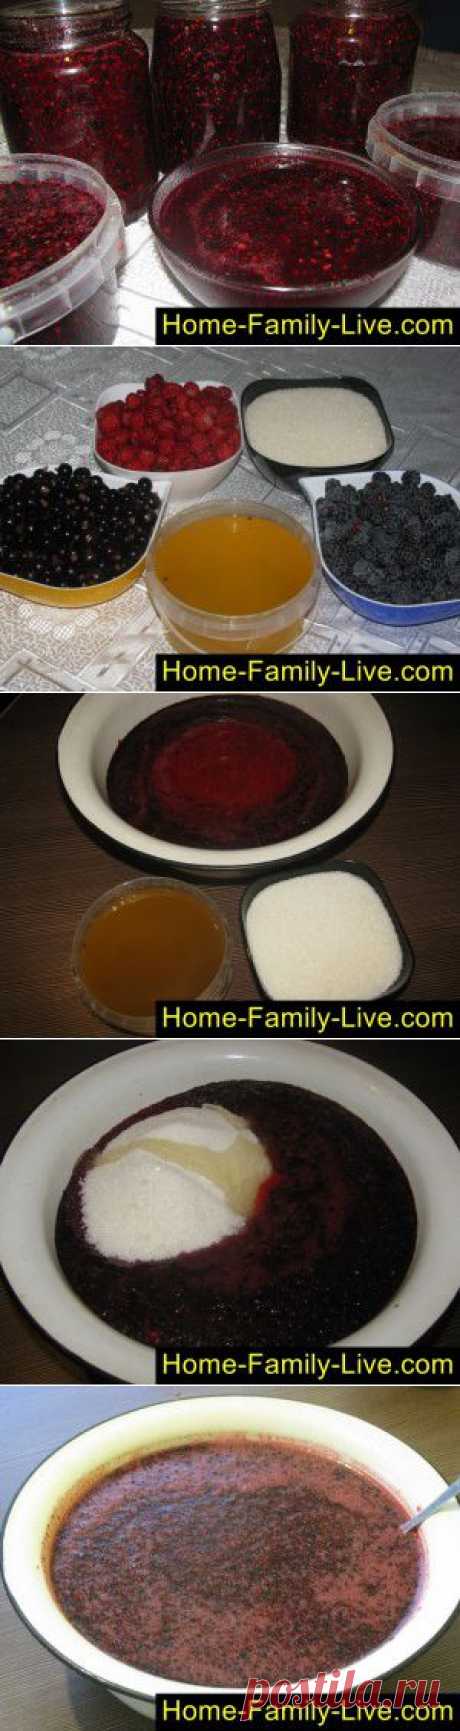 Живое варенье -пошаговый фоторецепт - ягоды в меду на зиму